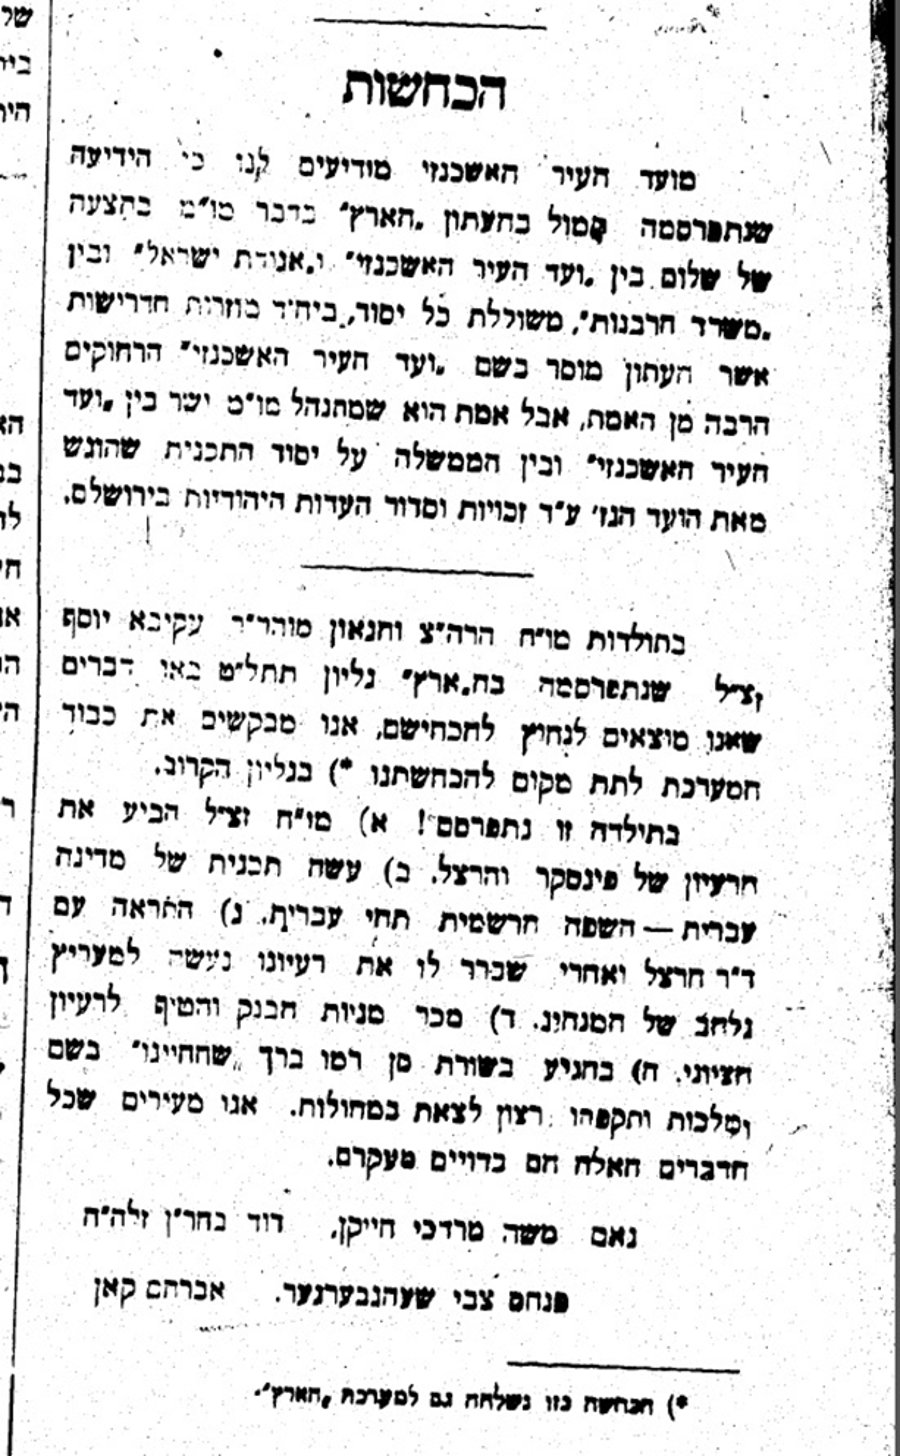 חתני הרב שלזינגר מכחישים את הנכתב בעיתון 'הארץ' מעל גבי עיתון קול ישראל ז' איר ה'תרפ"ב